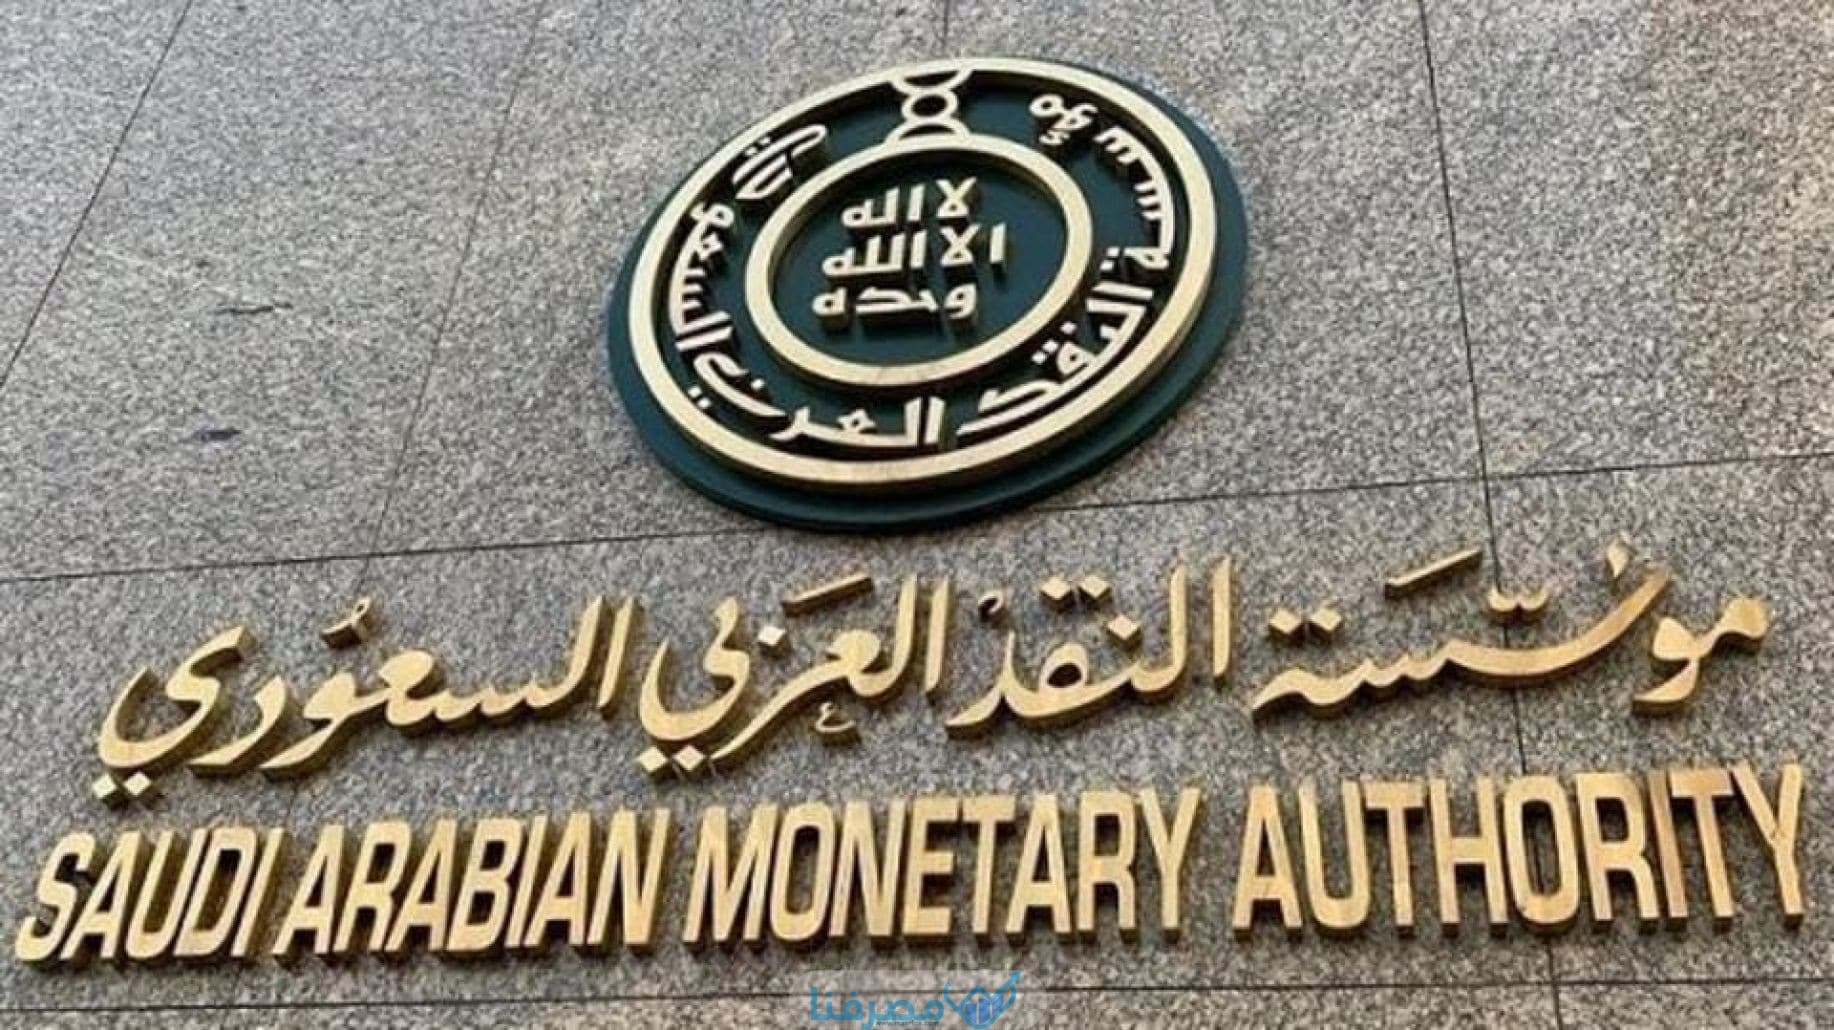 سويفت كود مؤسسة النقد العربي السعودي Saudi Arabian Monetary Agency BIC / Swift code